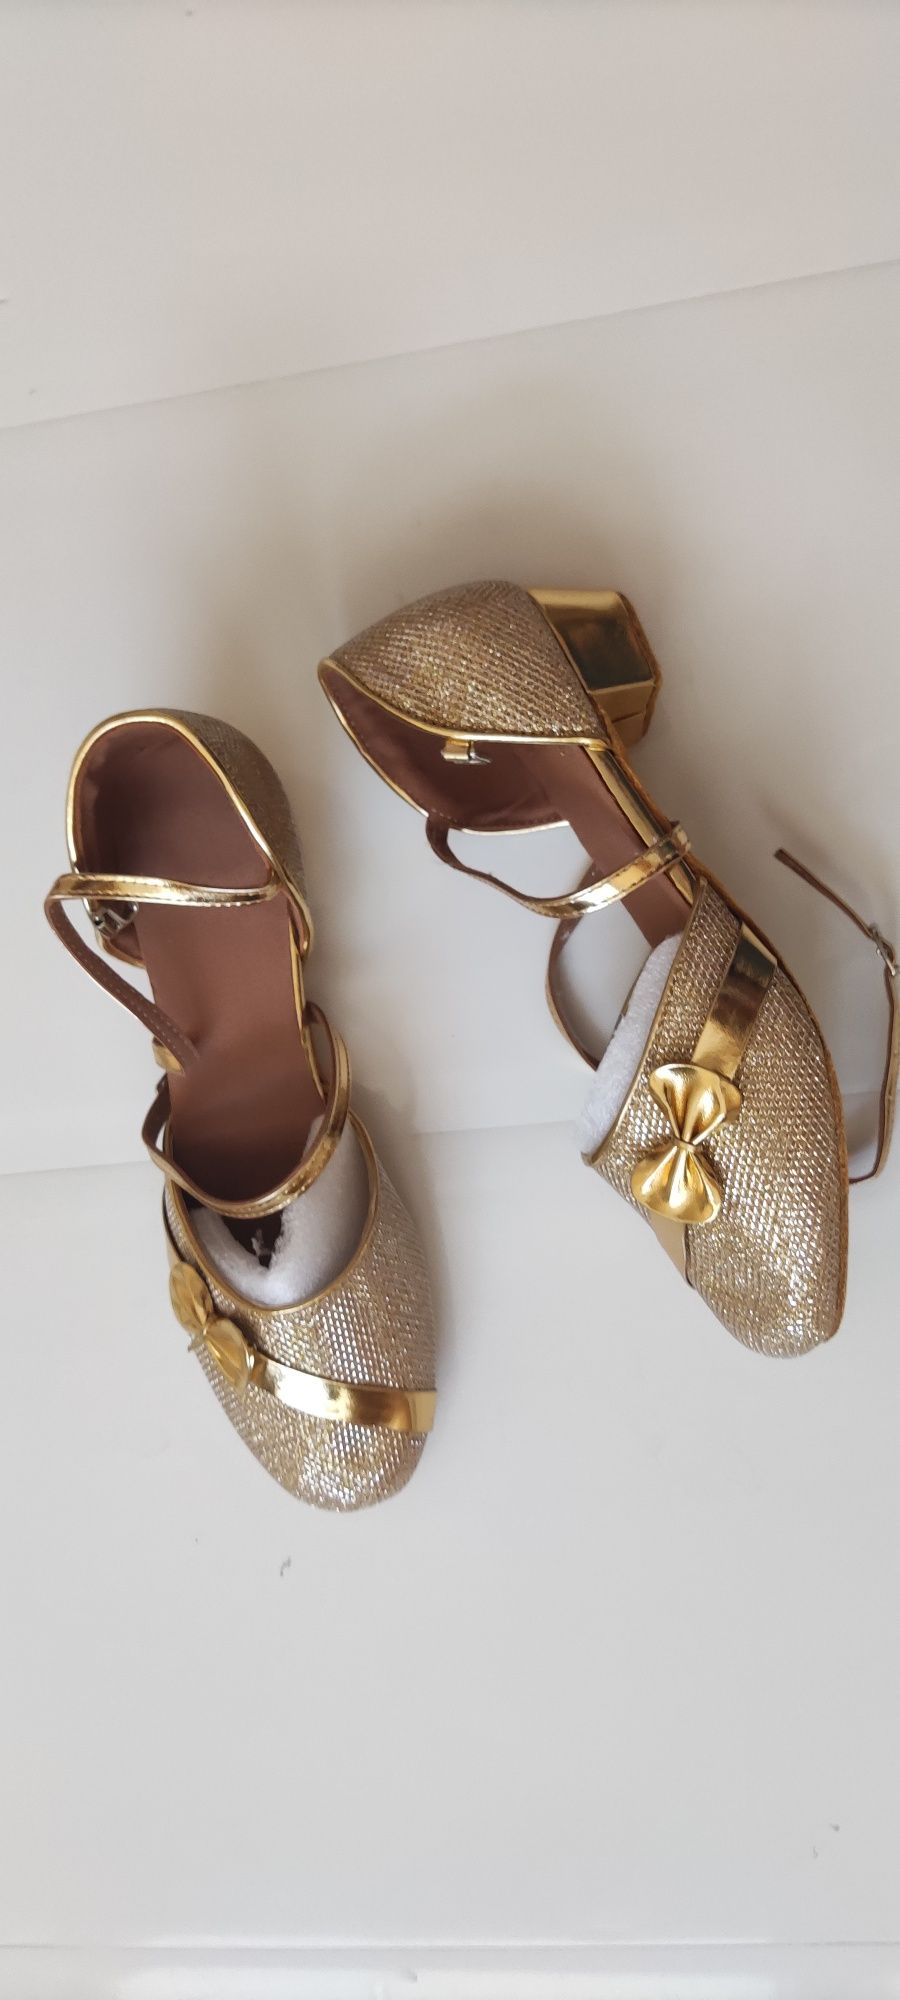 R. 38 nowe buty do tańca wkładka 24 cm złoto brokatowe katy